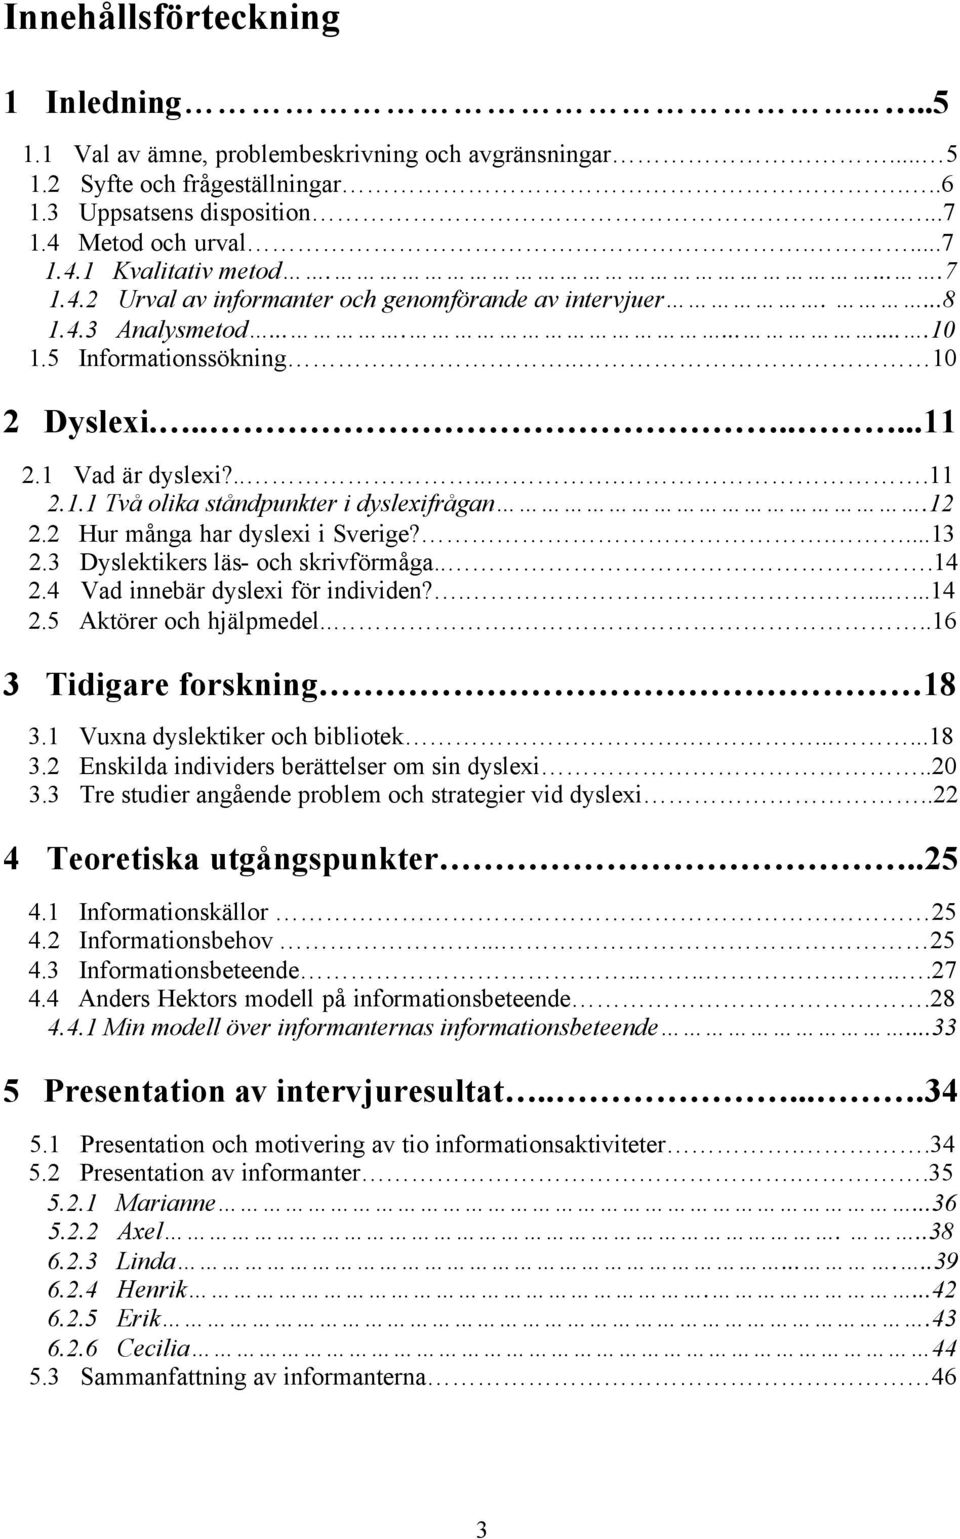 12 2.2 Hur många har dyslexi i Sverige?....13 2.3 Dyslektikers läs- och skrivförmåga...14 2.4 Vad innebär dyslexi för individen?.......14 2.5 Aktörer och hjälpmedel.....16 3 Tidigare forskning 18 3.